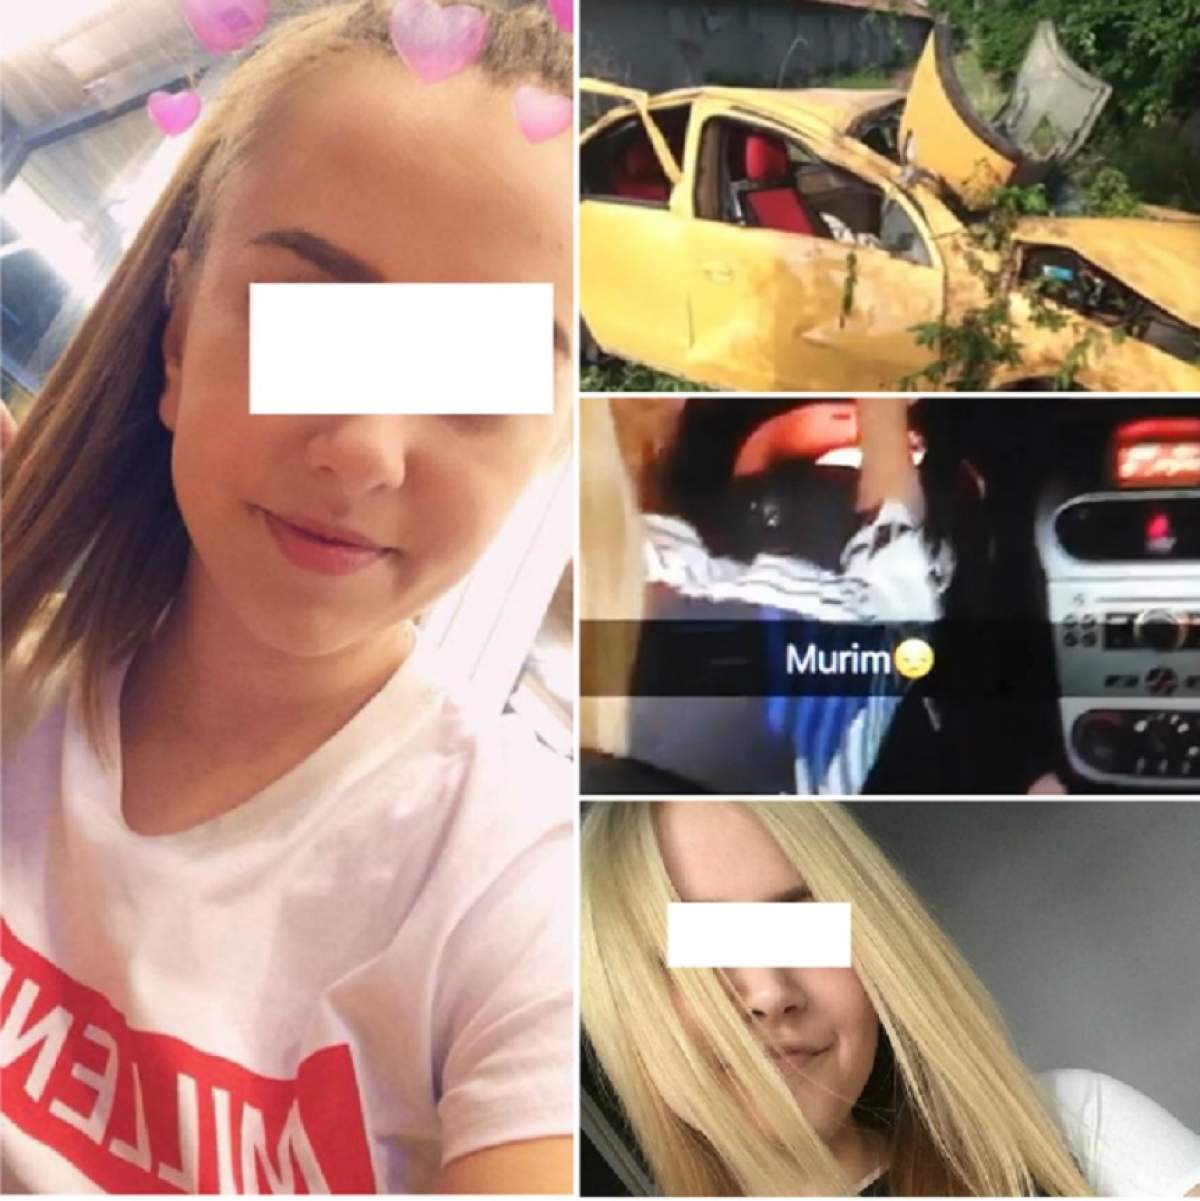 De ce a postat una dintre fetele moarte în accidentul de la Năsturelu mesajul "Murim"! Explicaţia unui psiholog criminalist